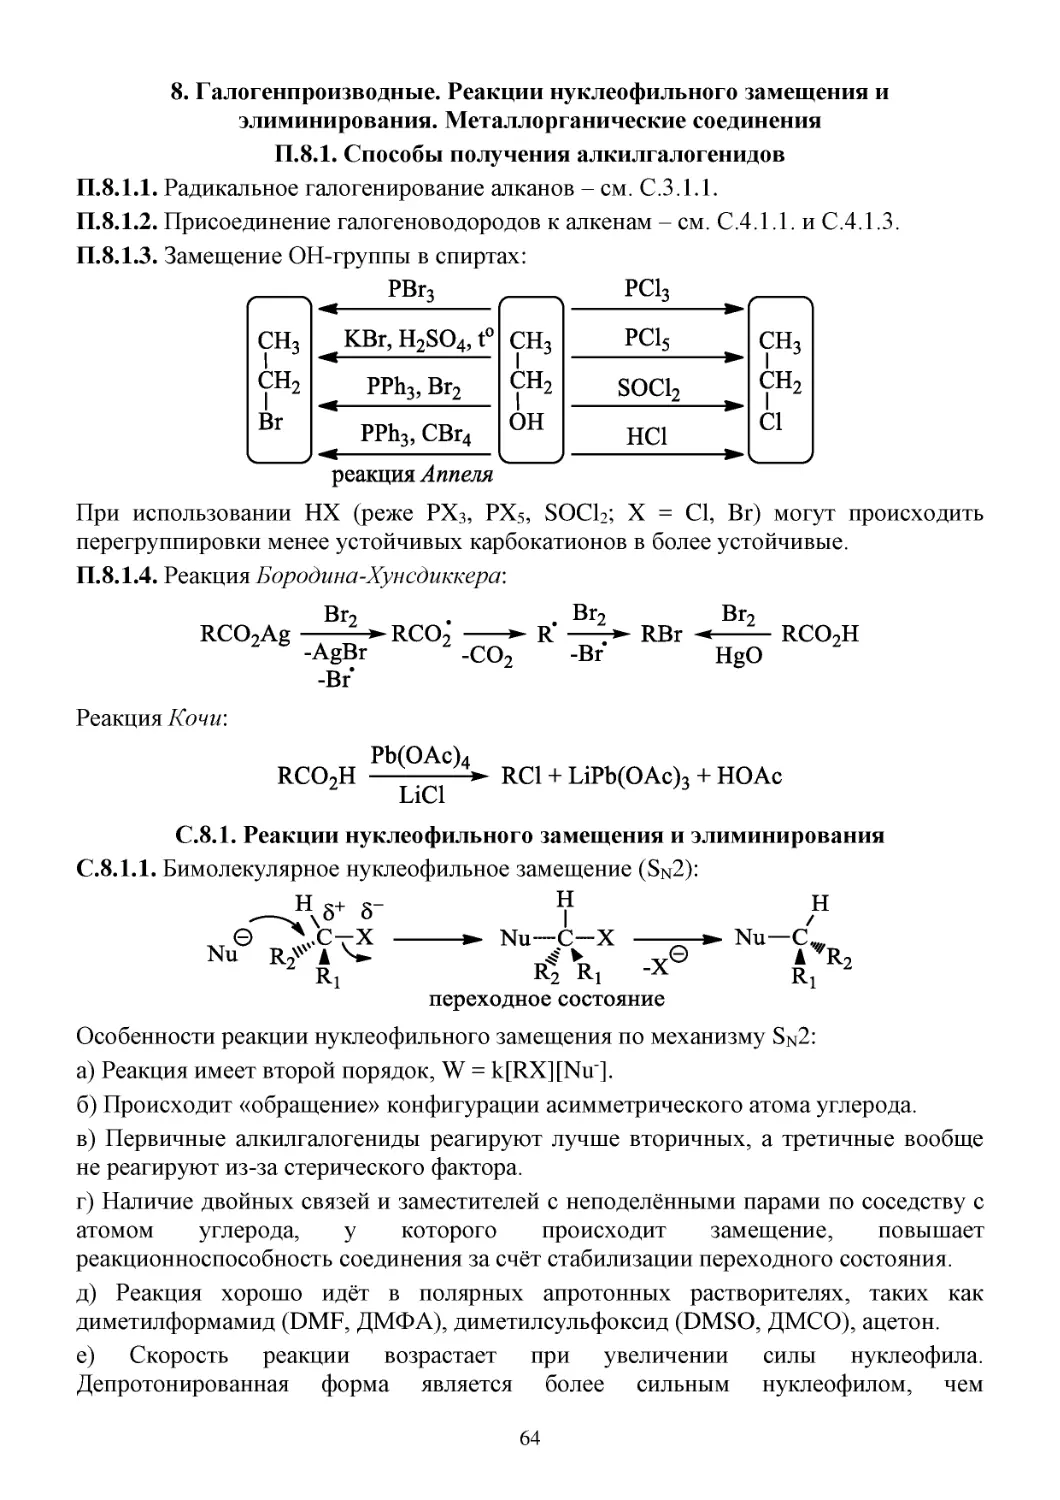 8. Галогенпроизводные. Реакции нуклеофильного замещения и элиминирования. Металлорганические соединения
П.8.1. Способы получения алкилгалогенидов
С.8.1. Реакции нуклеофильного замещения и элиминирования